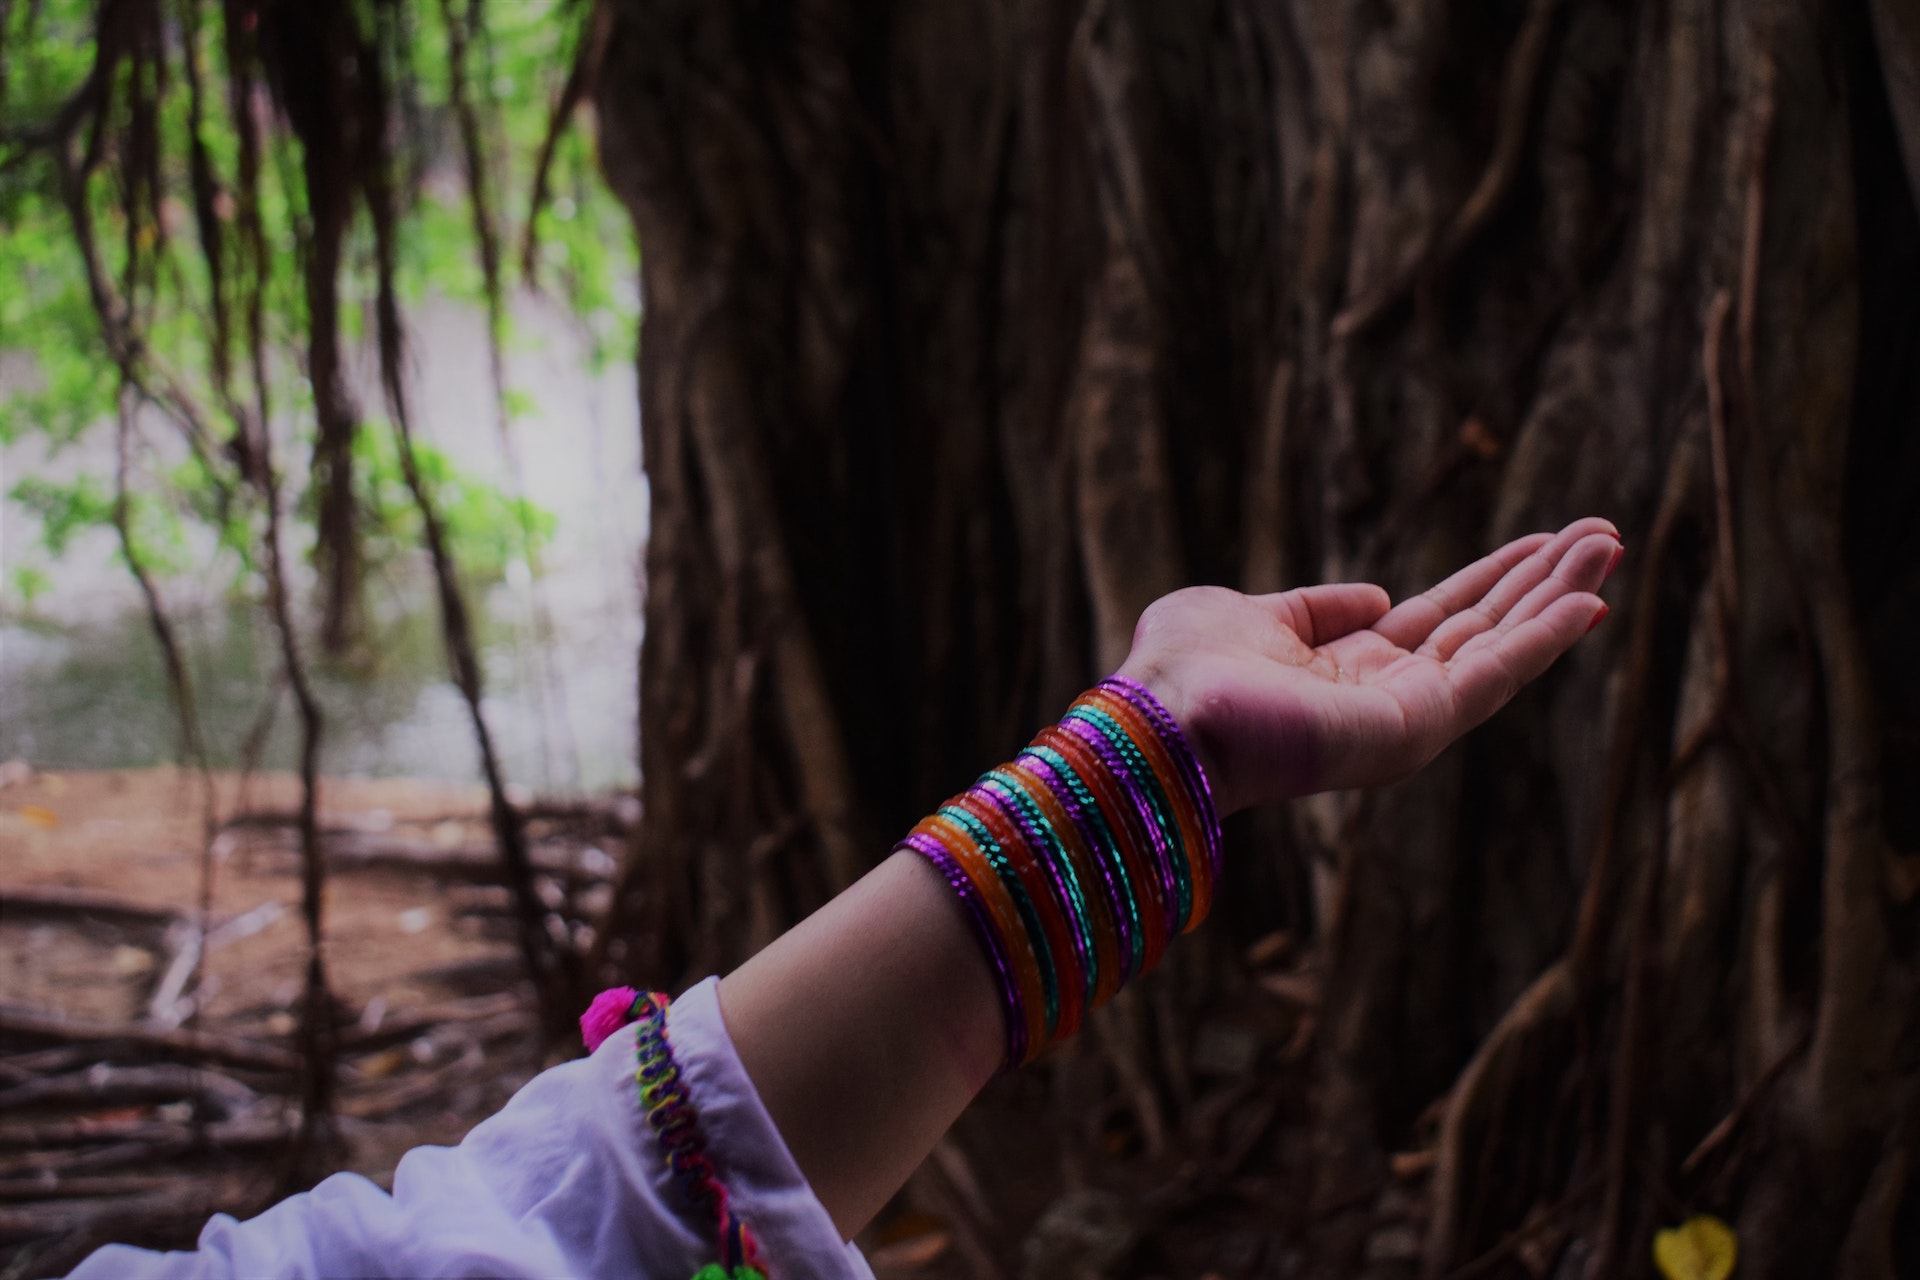 avant-bras au poignet cerclé de bracelets multicolores devant un tronc d'arbre